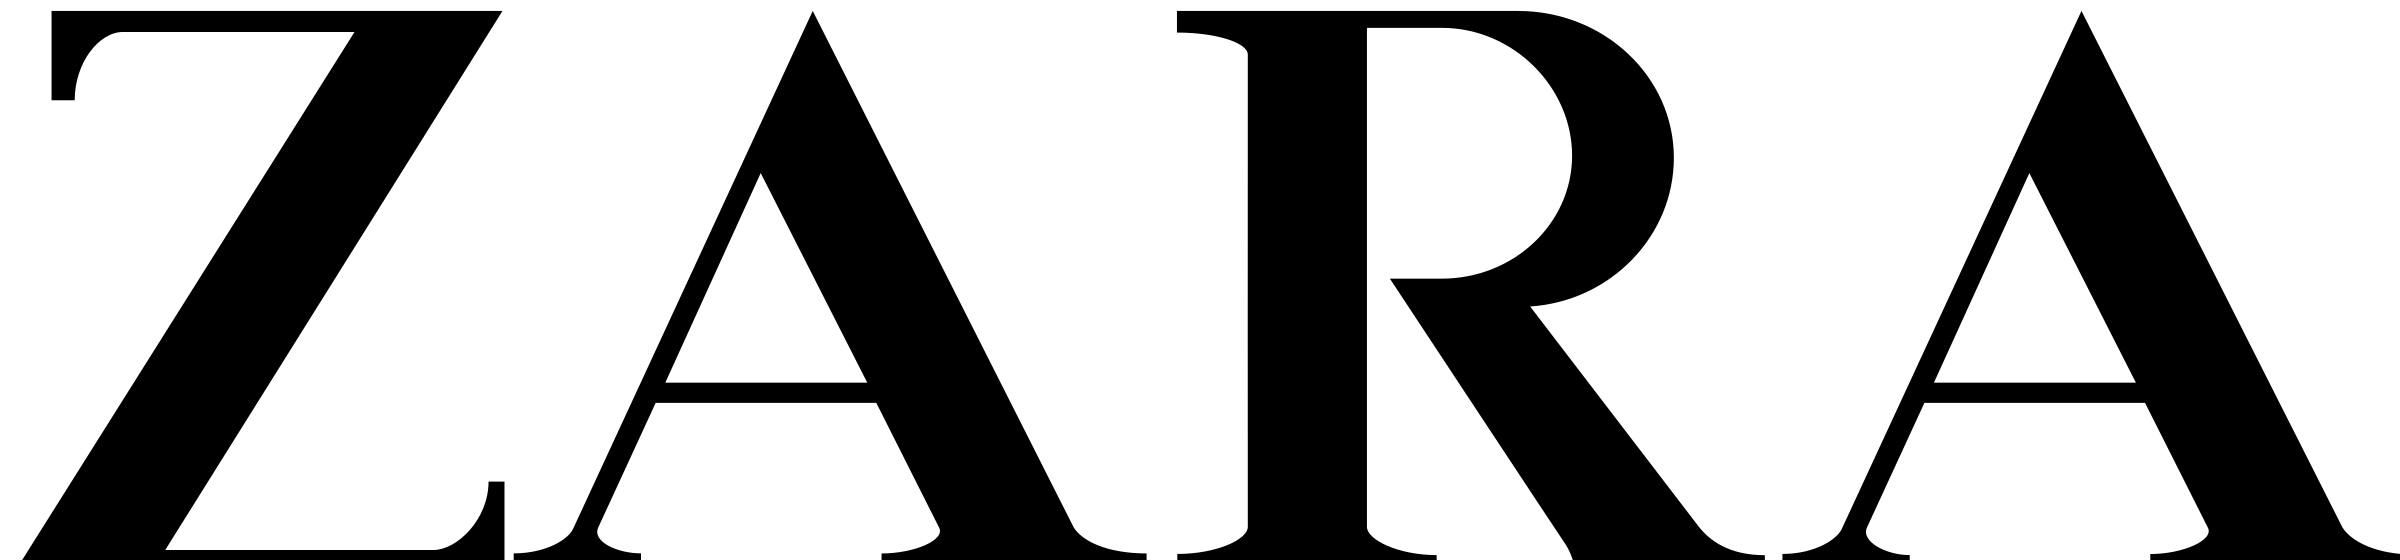 Zara Logo PNG - 179425